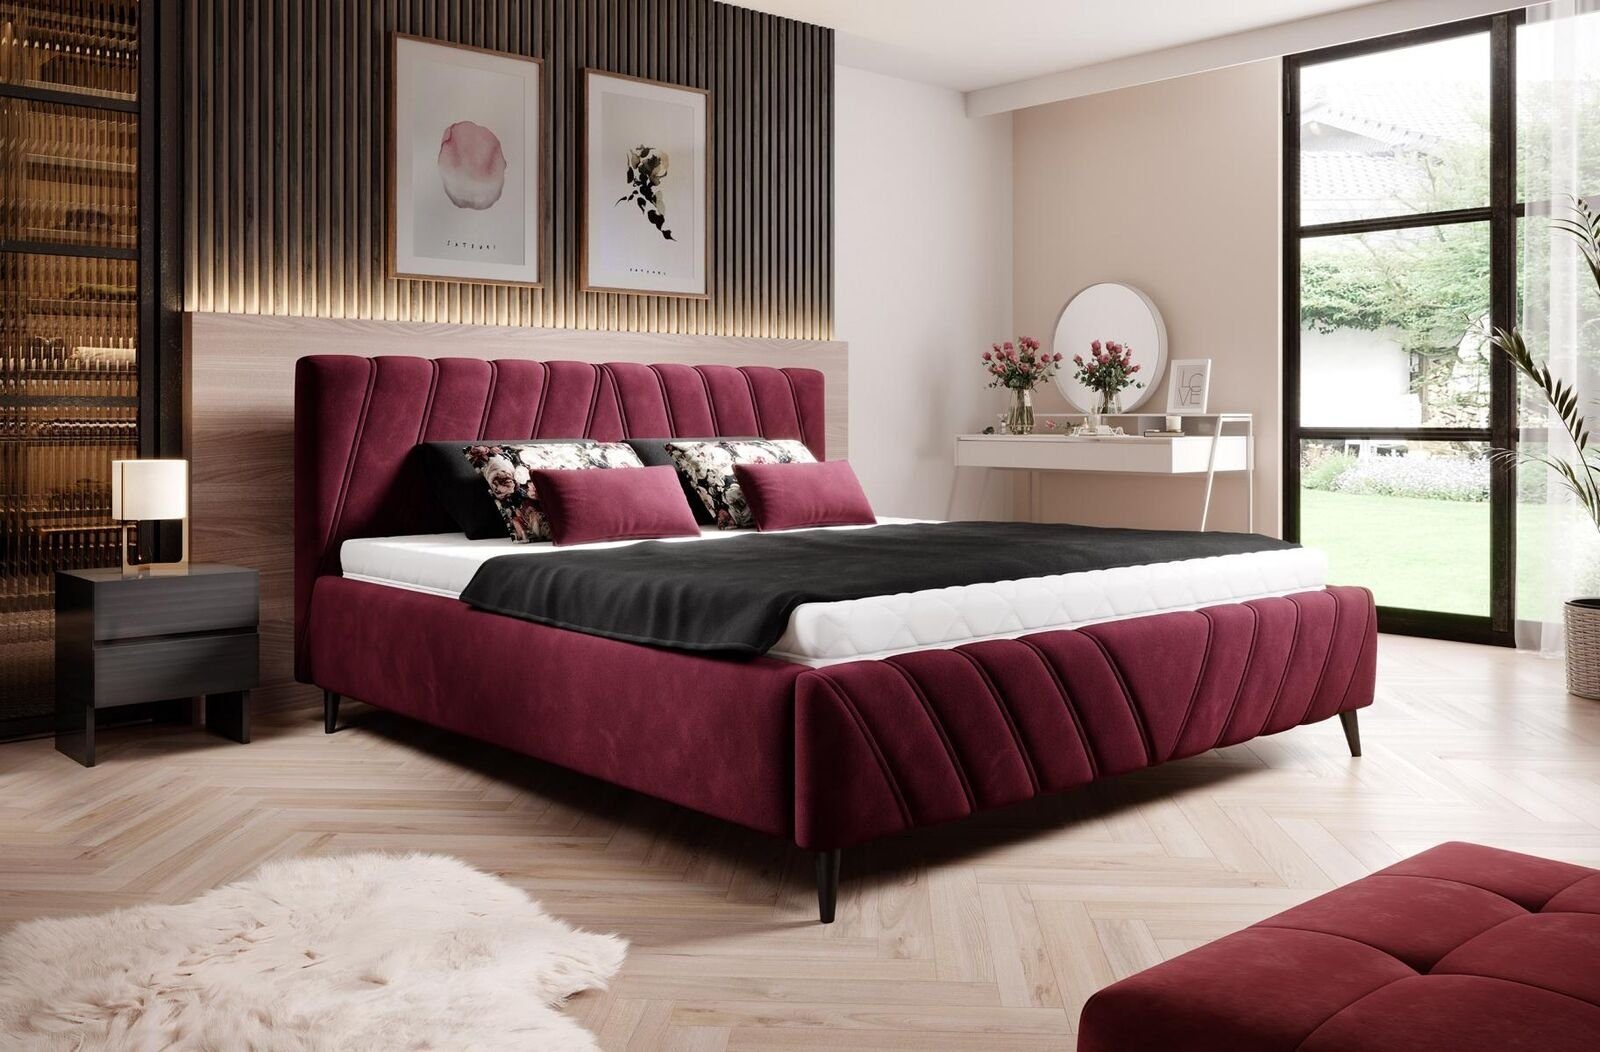 JVmoebel Bett, Luxus Bett Textil Design Hotel Betten Polster 180x200cm